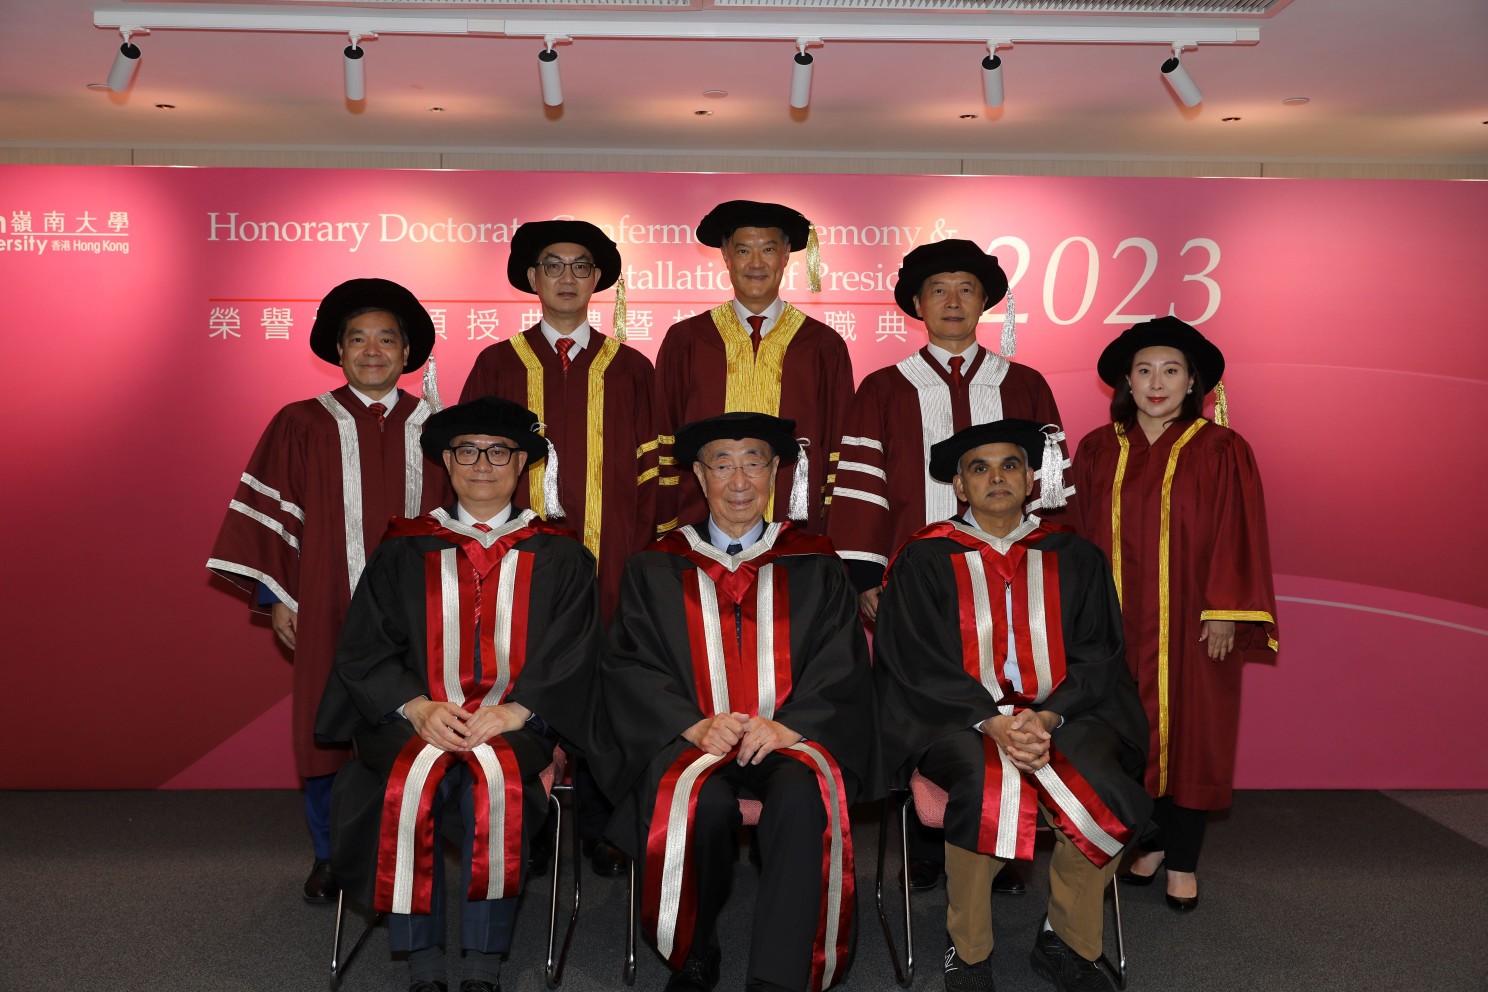 岭南大学举行2023年荣誉博士颁授典礼暨校长就职典礼。